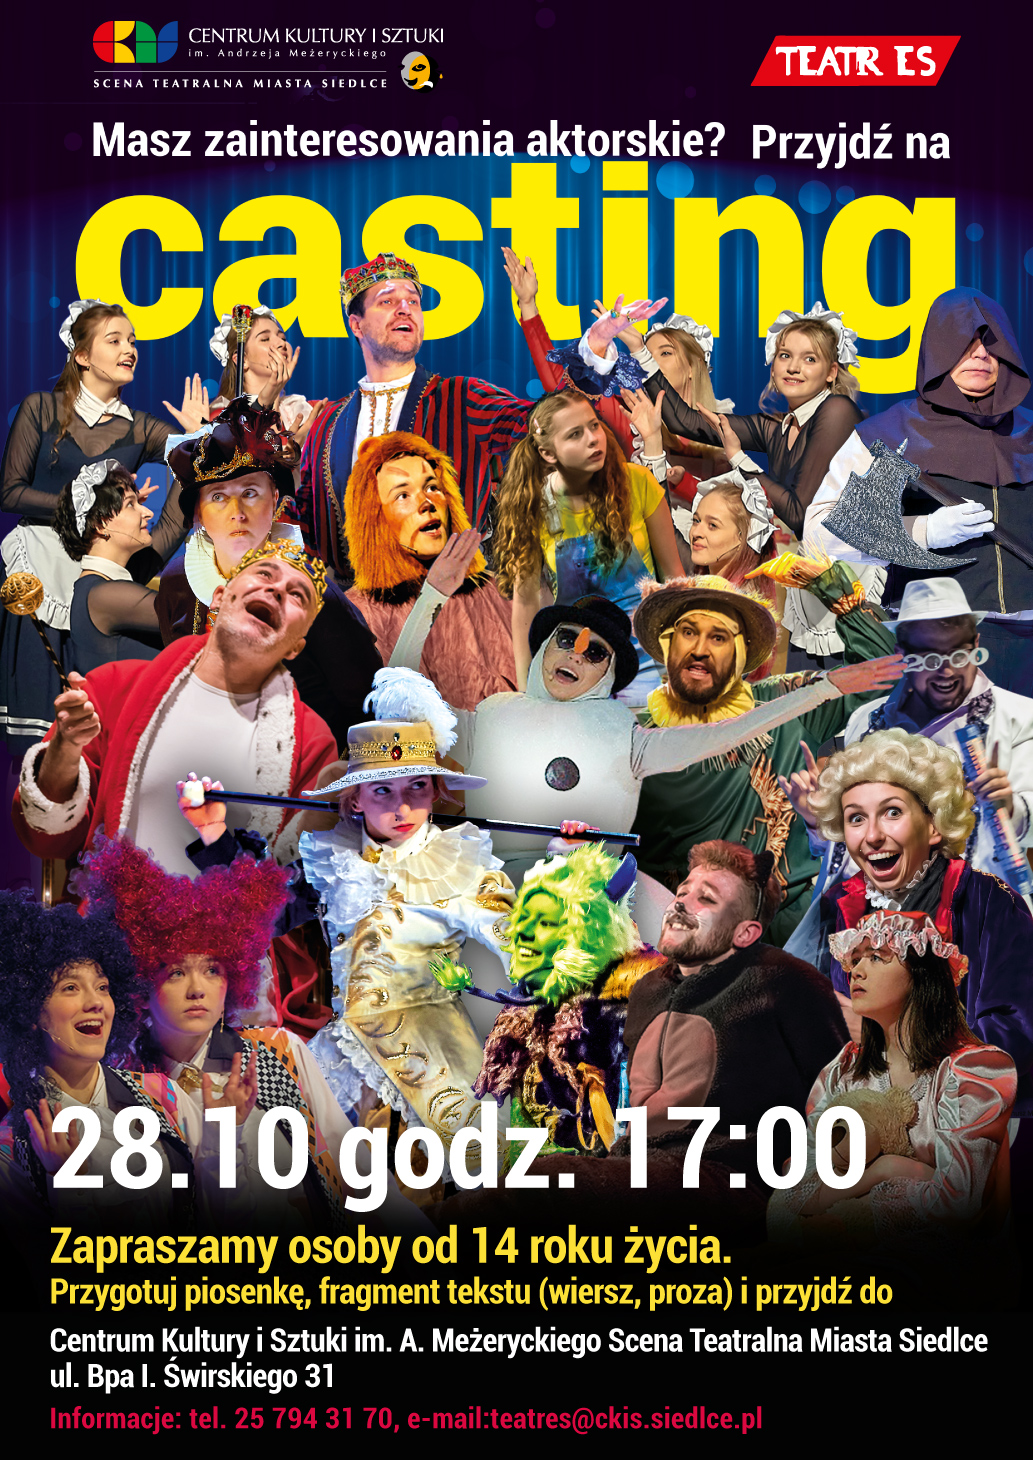 Teatr ES zaprasza na CASTING. Przesłuchania odbędą się 28 października od godz. 17:00 na Scenie Teatralnej Miasta Siedlce.